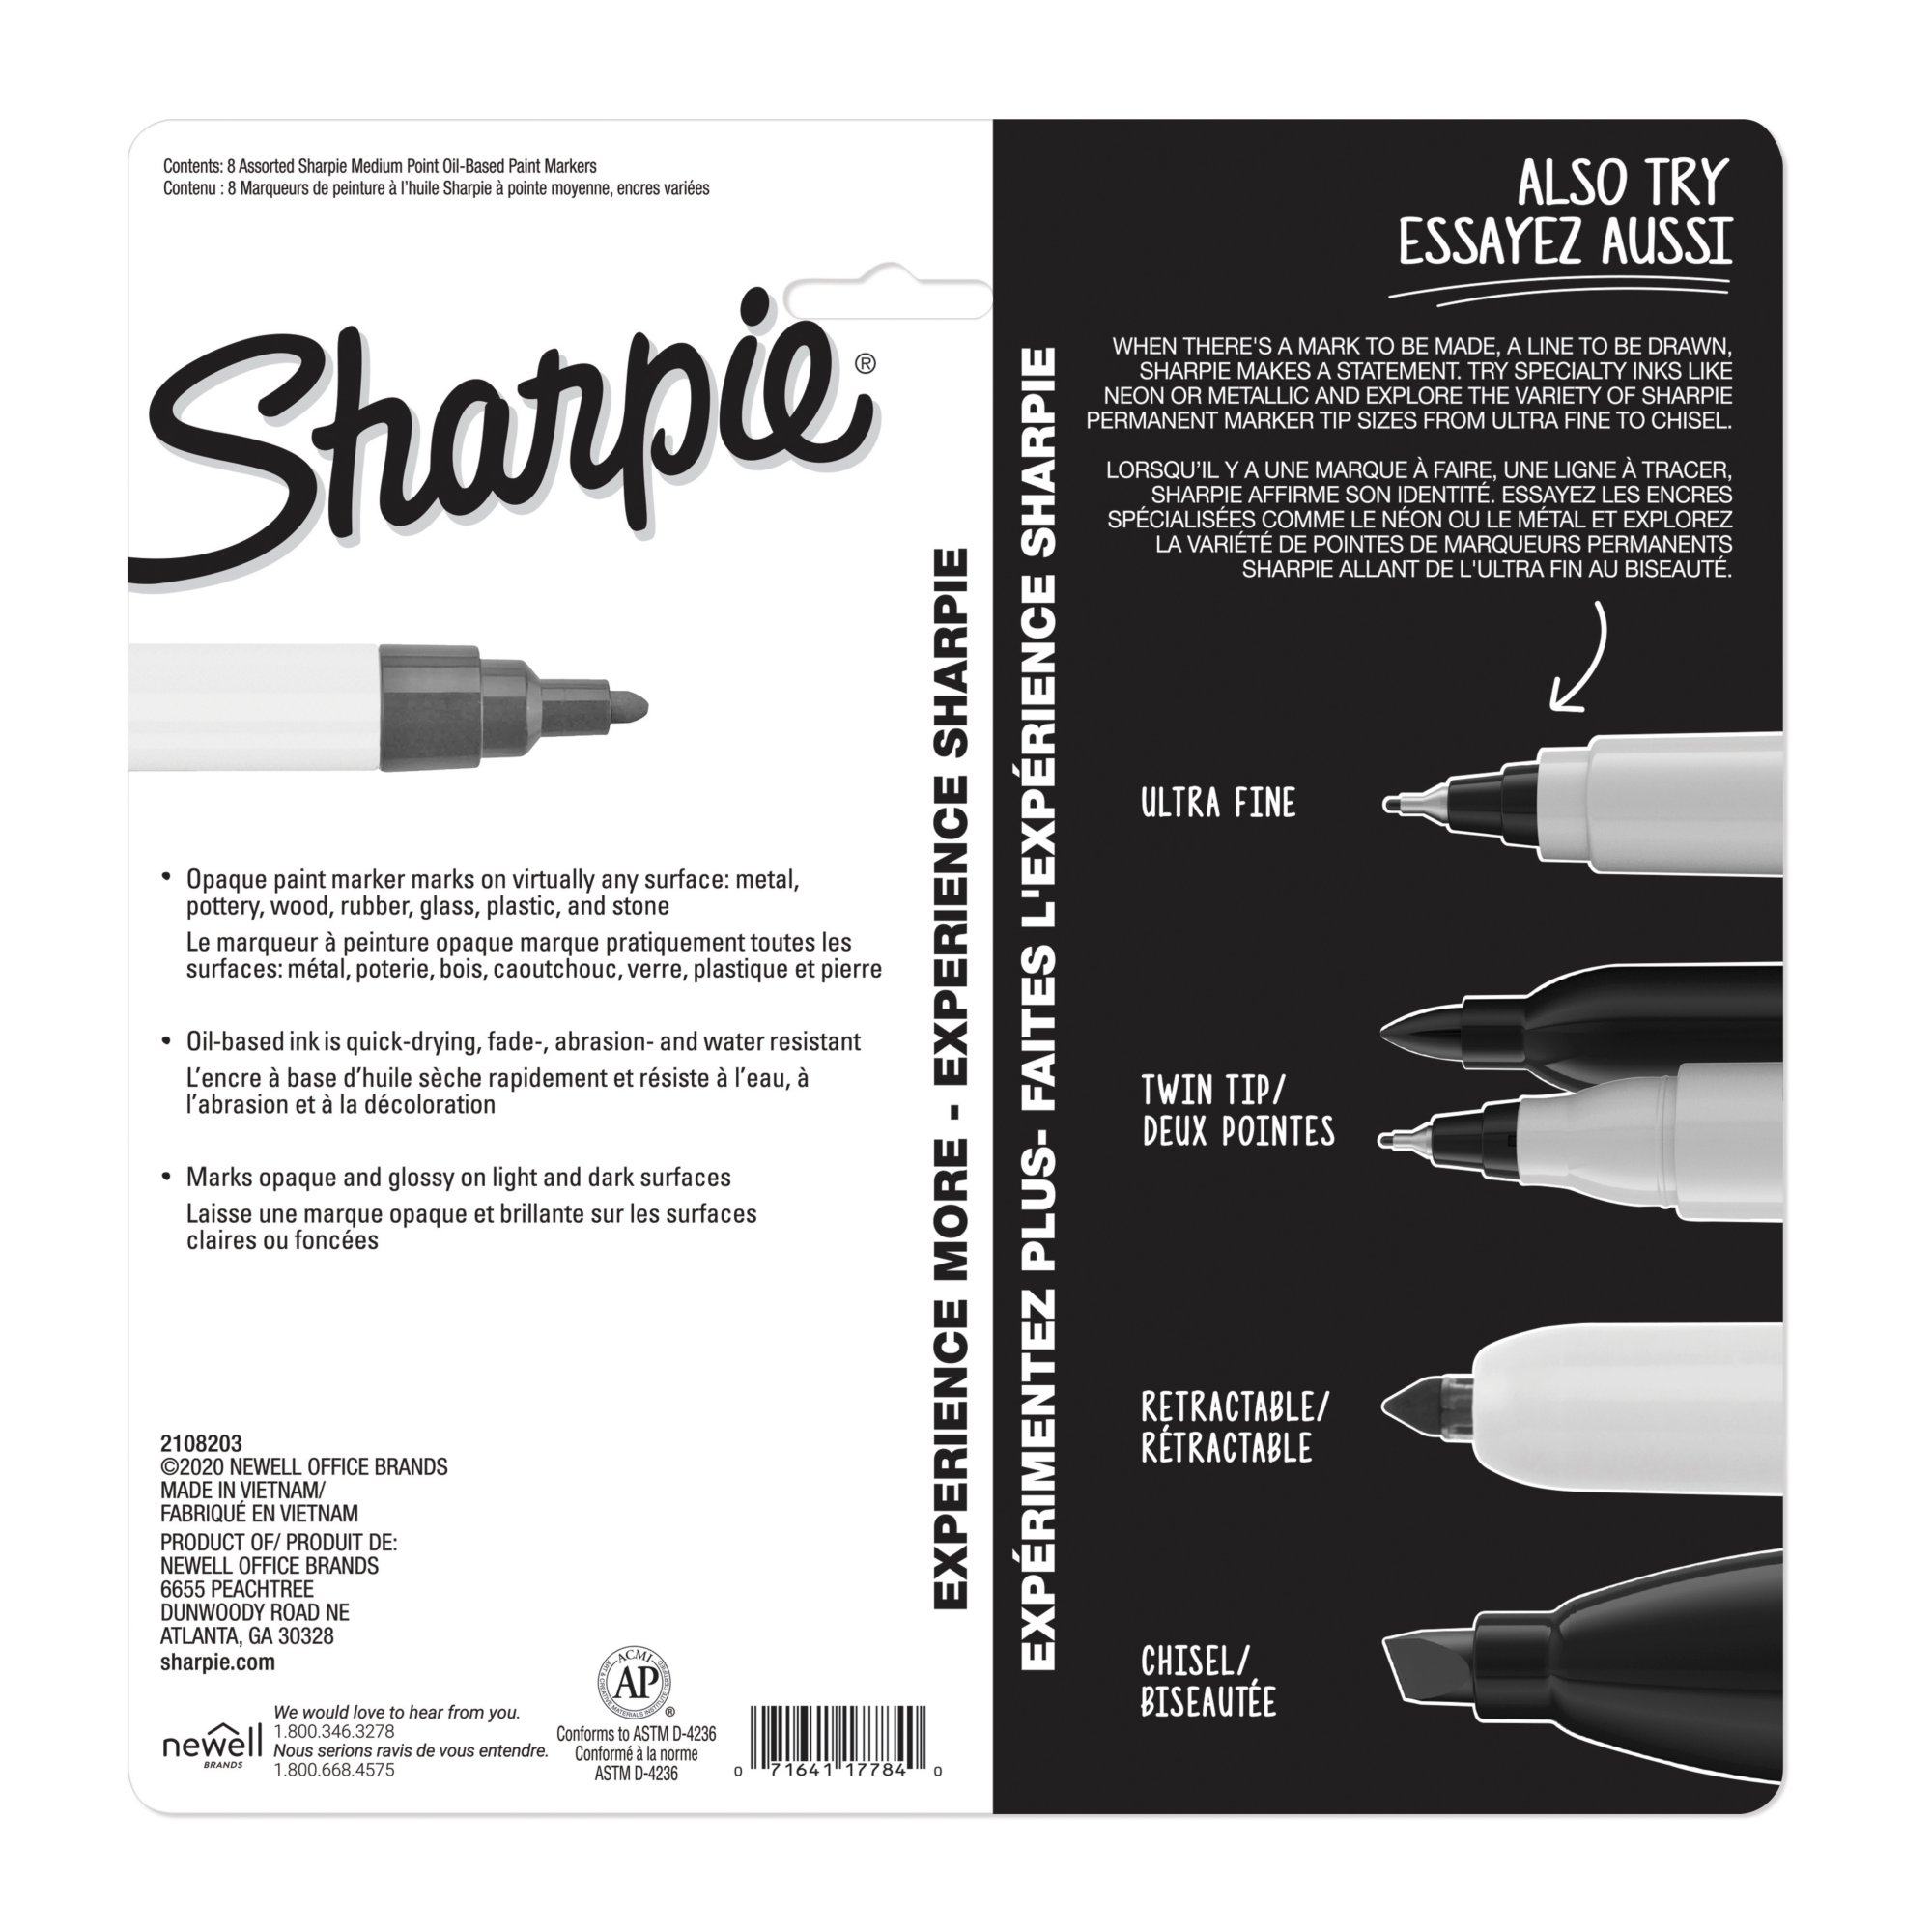 Reviews for Sharpie White Medium Point Oil-Based Paint Marker (2-Pack)